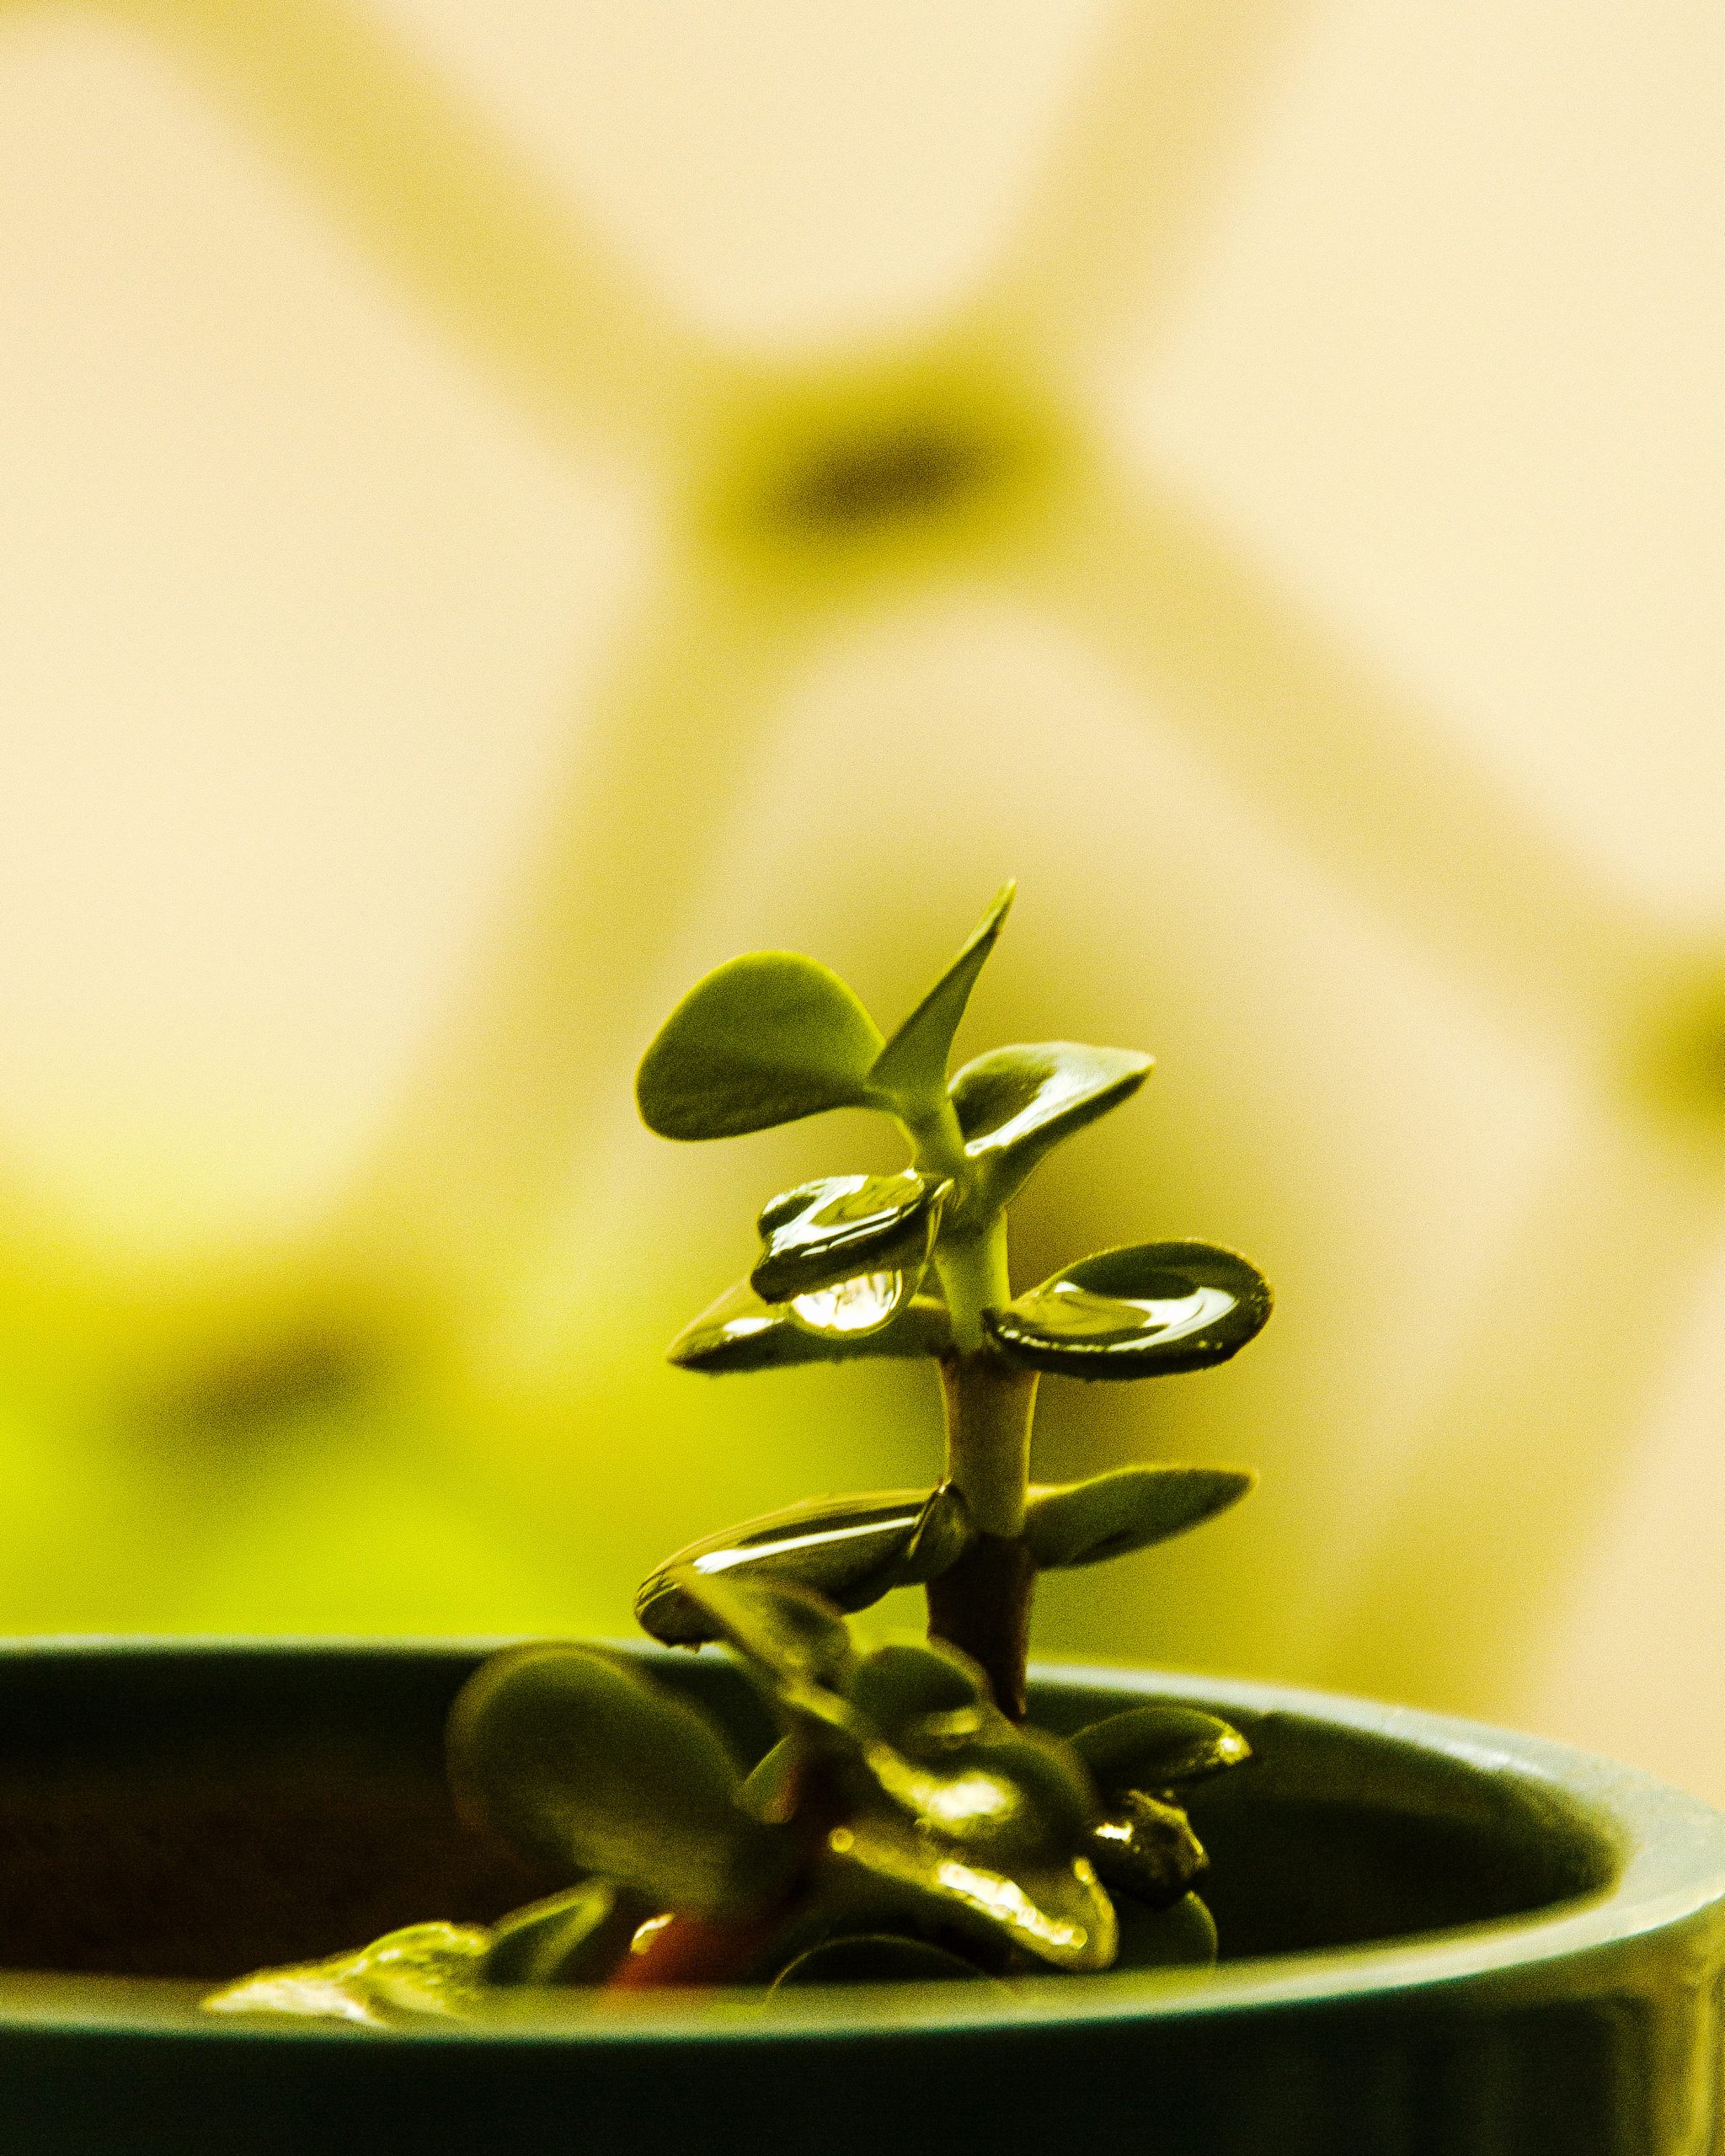 Jade Plant on focus